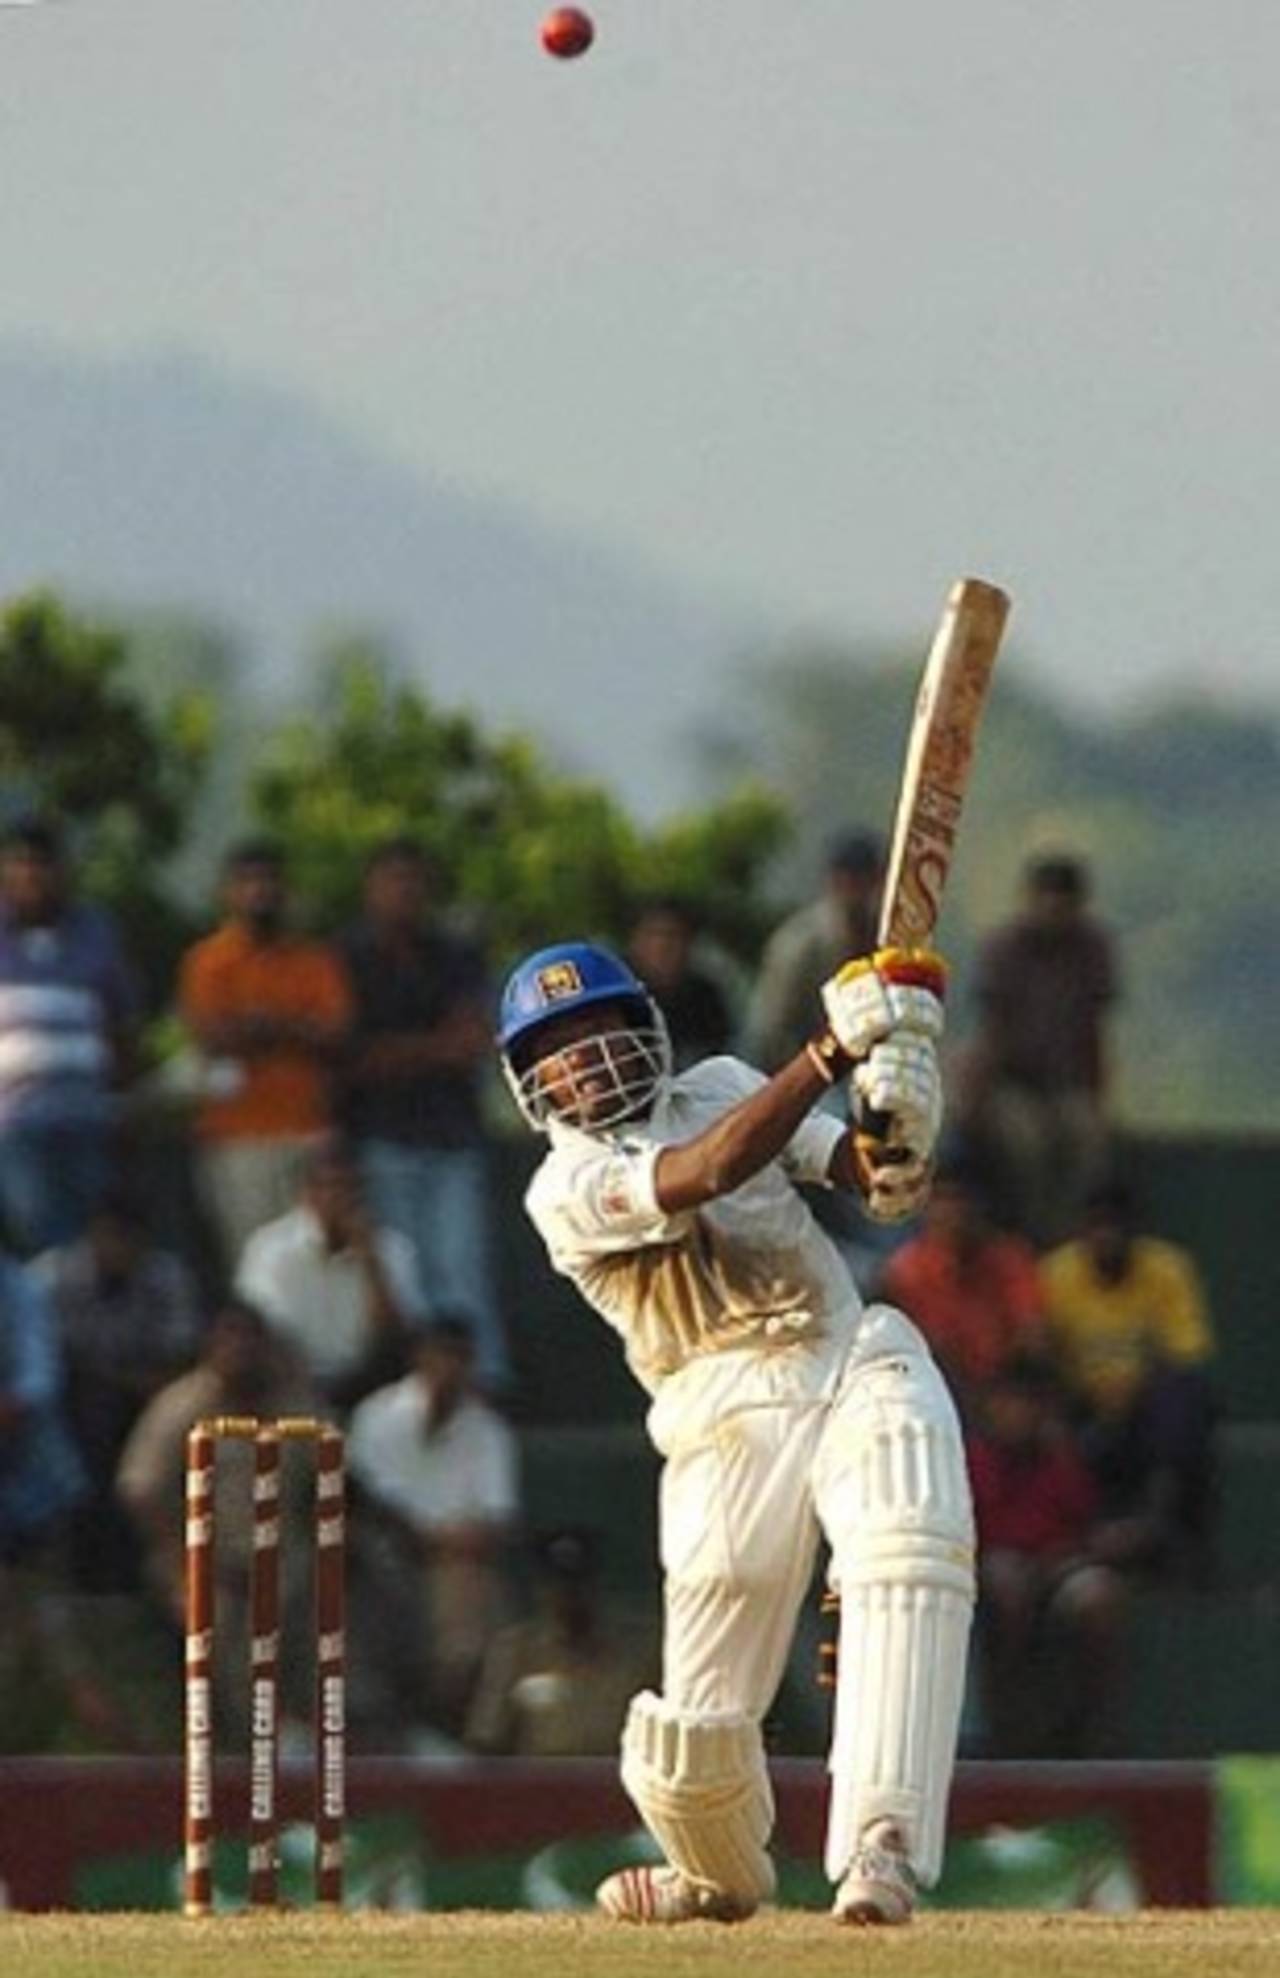 Malinga Bandara cuts loose, Sri Lanka v Pakistan, 2nd Test, Kandy, 1st day, April 3 2006 